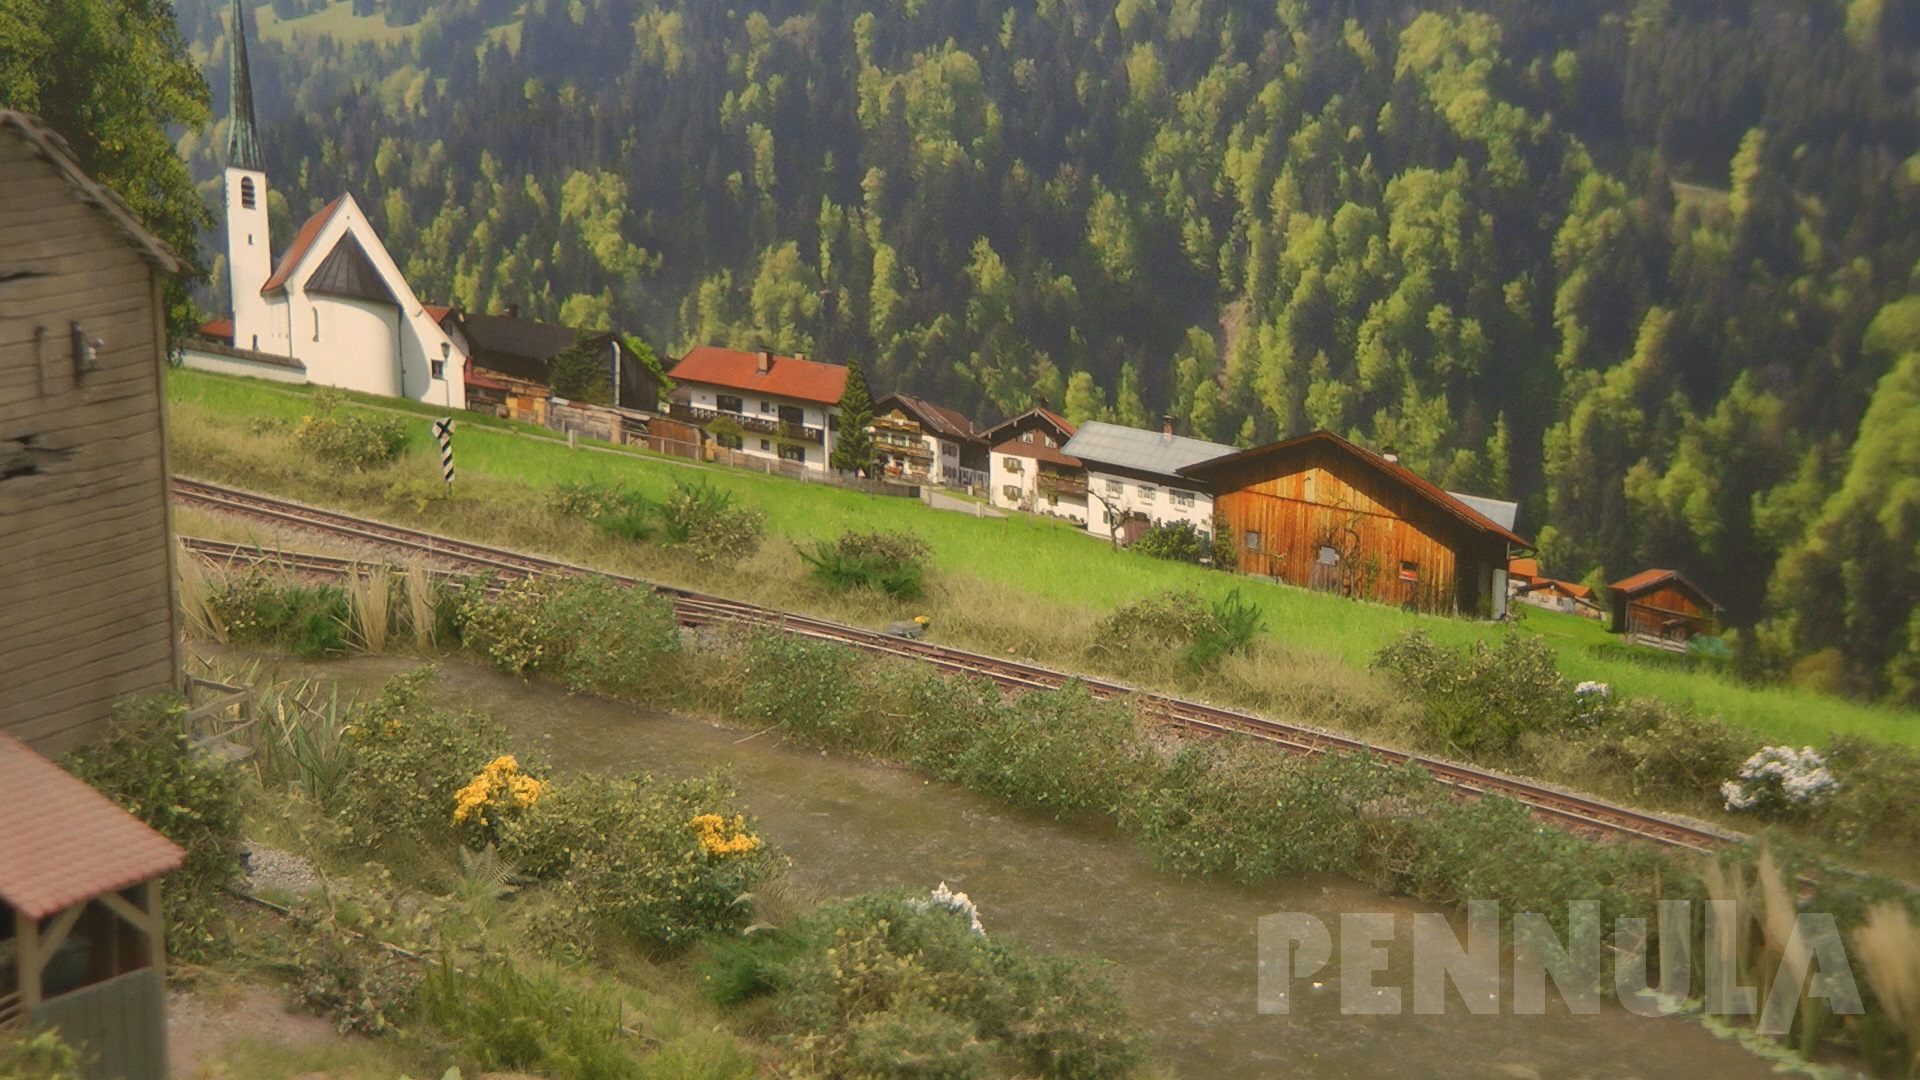 Die Magie des JOWI Modellbahn Hintergrund: Die Pinzgauer Lokalbahn der Spur H Nuller aus Willich